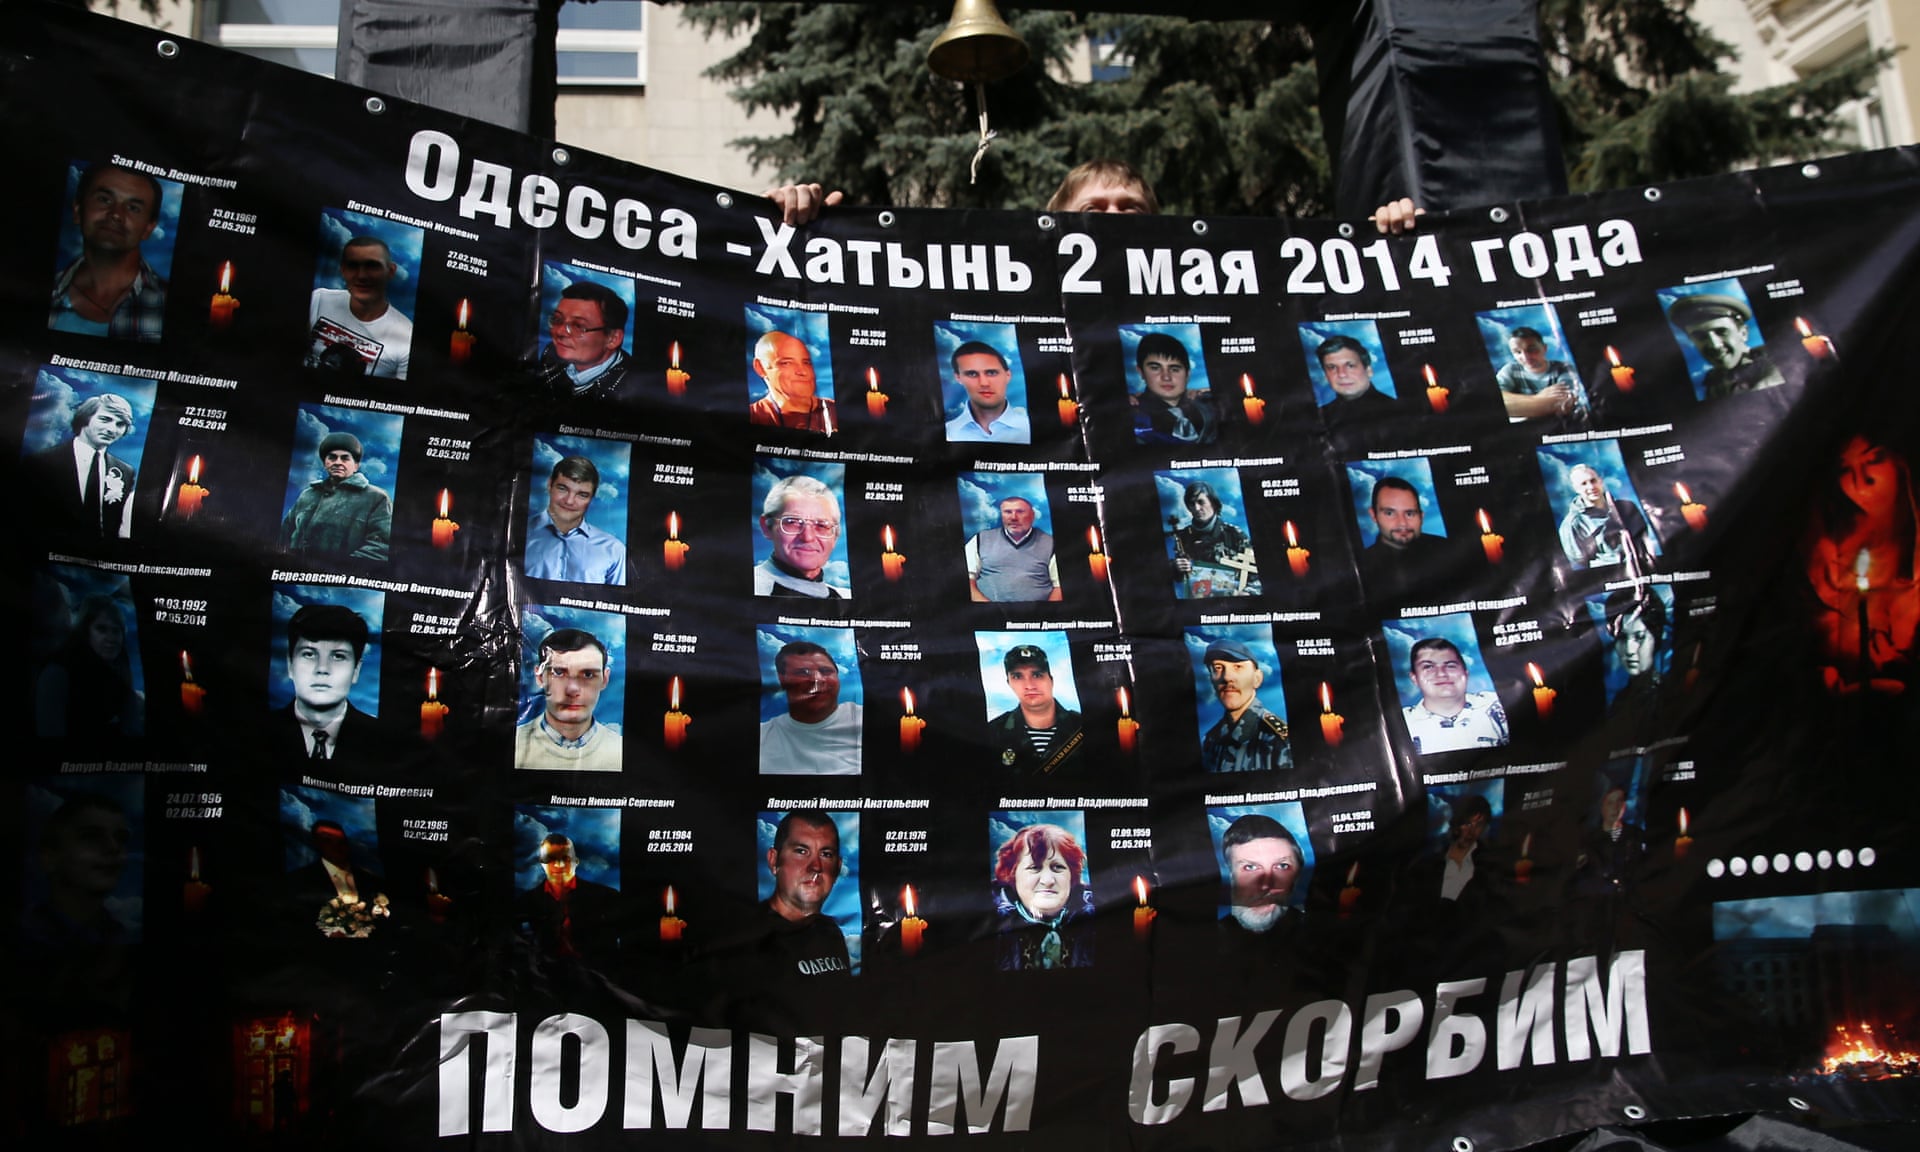 Сколько погибших в одессе. Одесса 2 мая дом профсоюзов. Дом профсоюзов в Одессе 2 мая 2014 года.